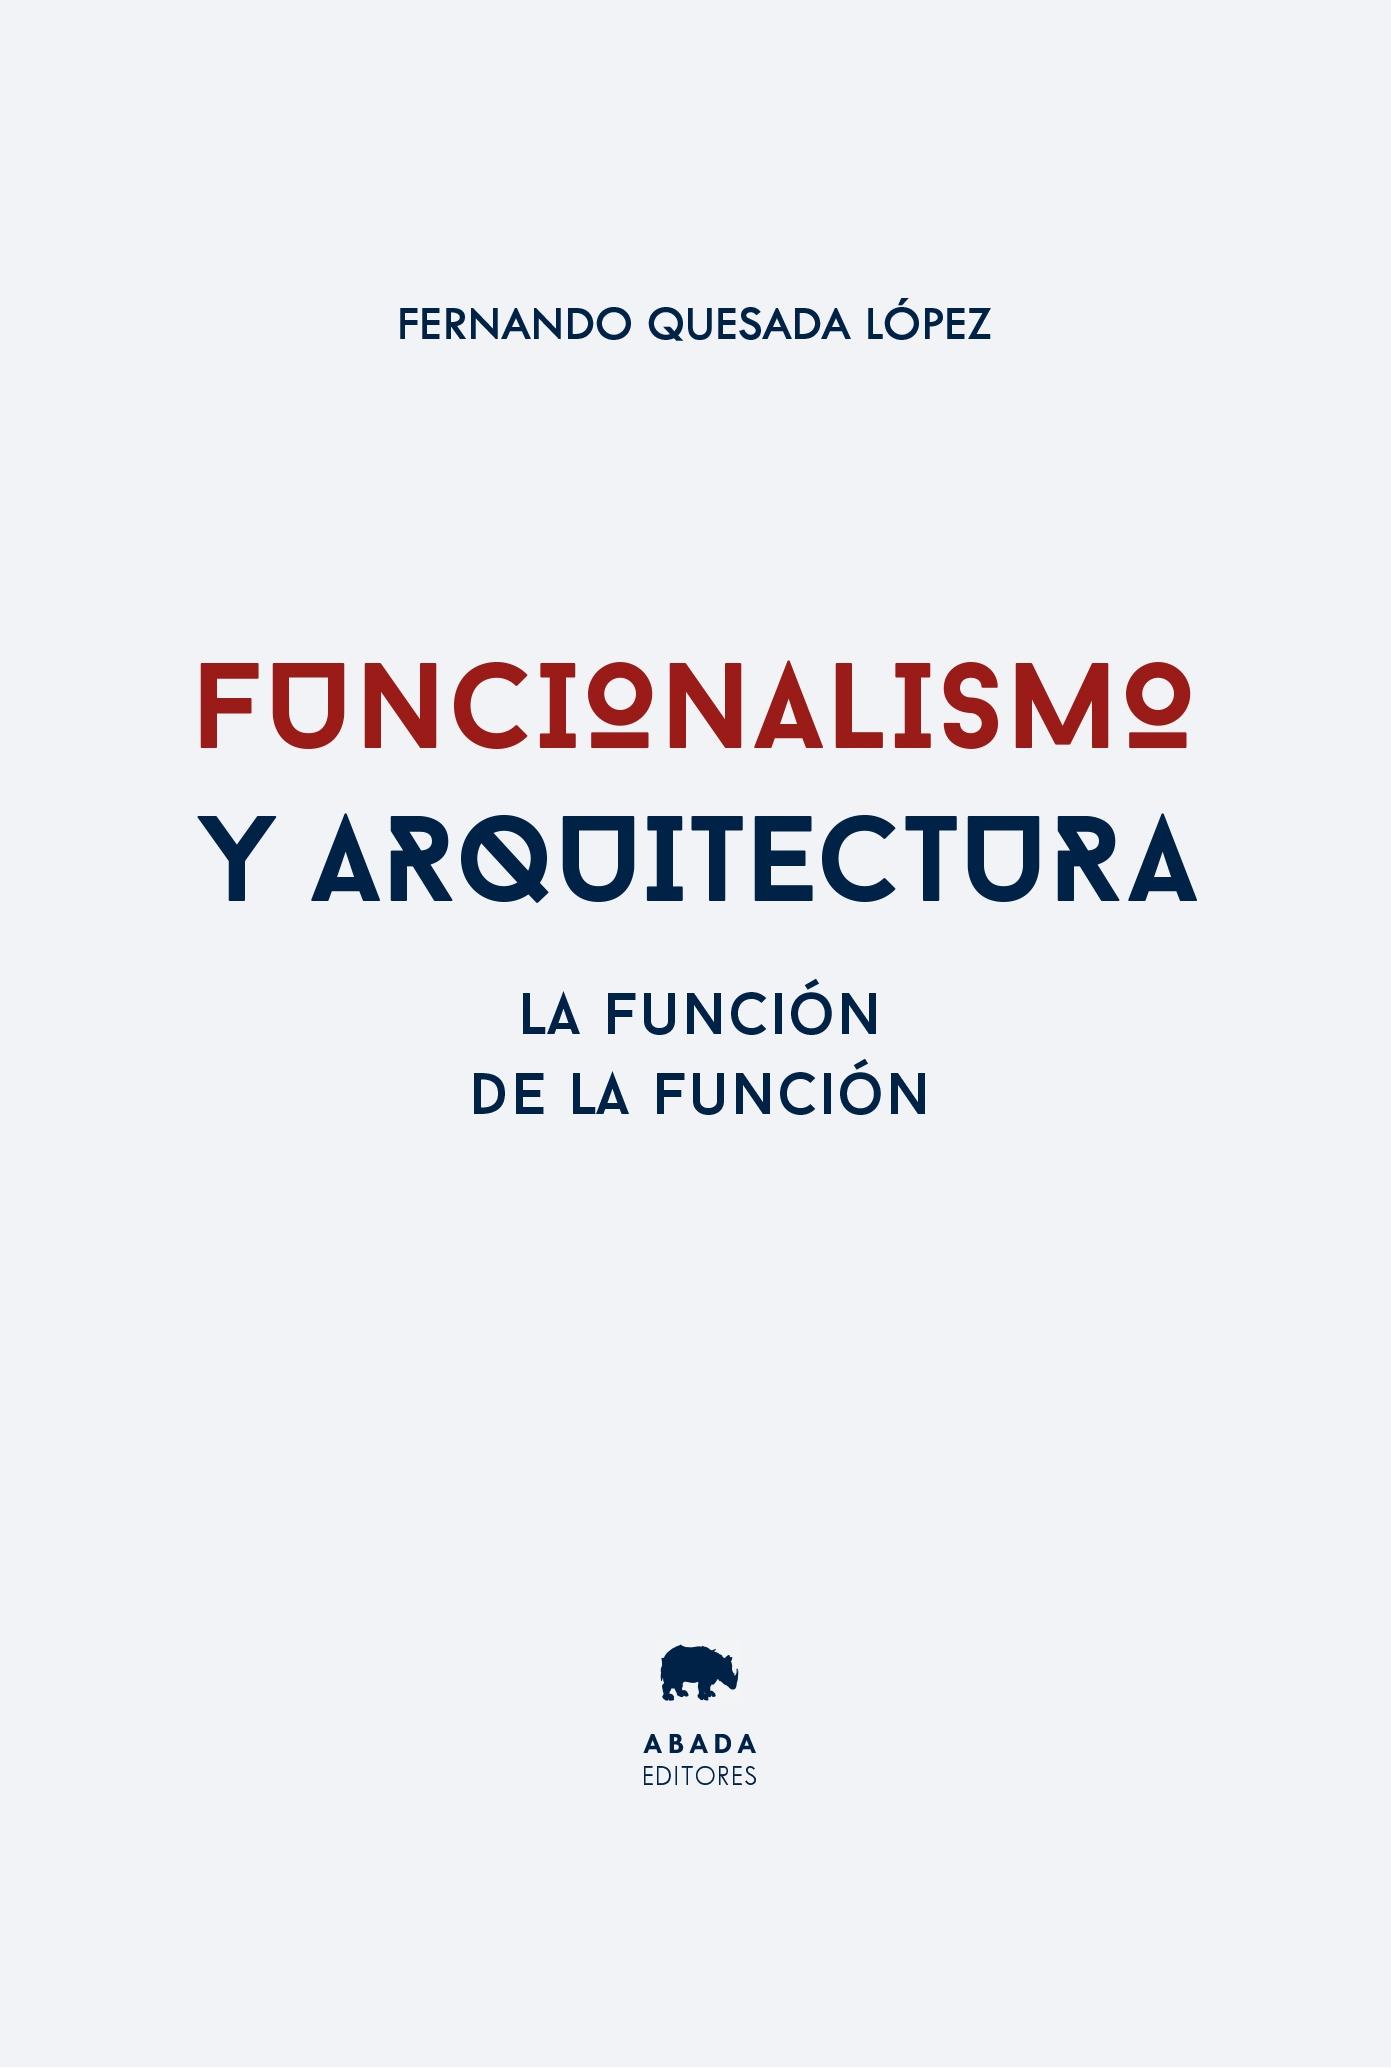 Funcionalismo y arquitectura "La función de la función". 